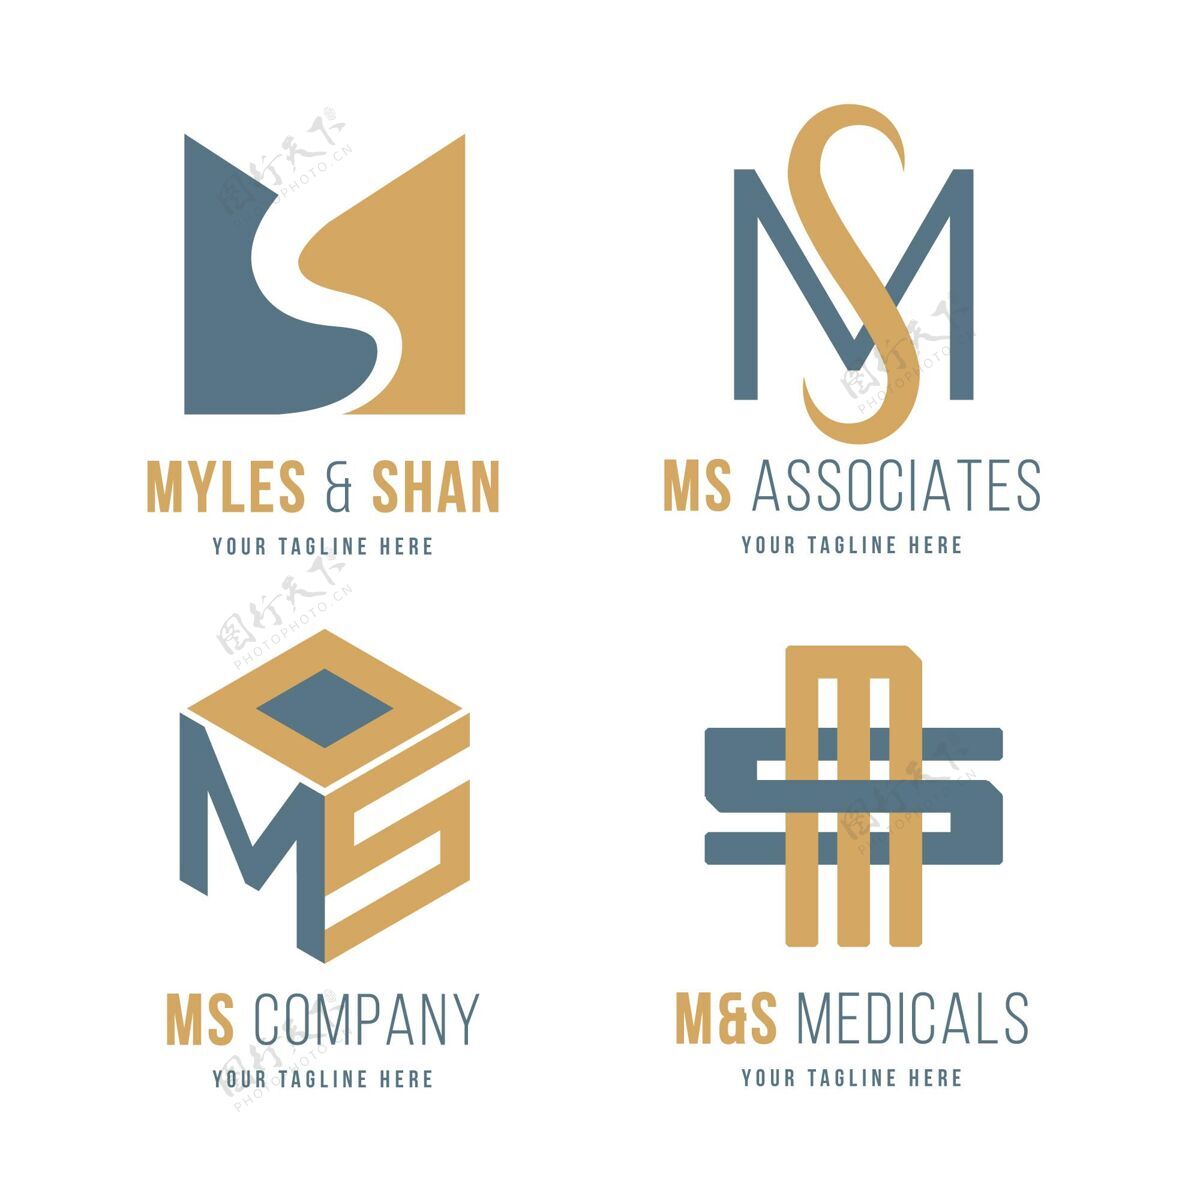 平面设计平面设计ms标志集企业标识公司标识企业标识